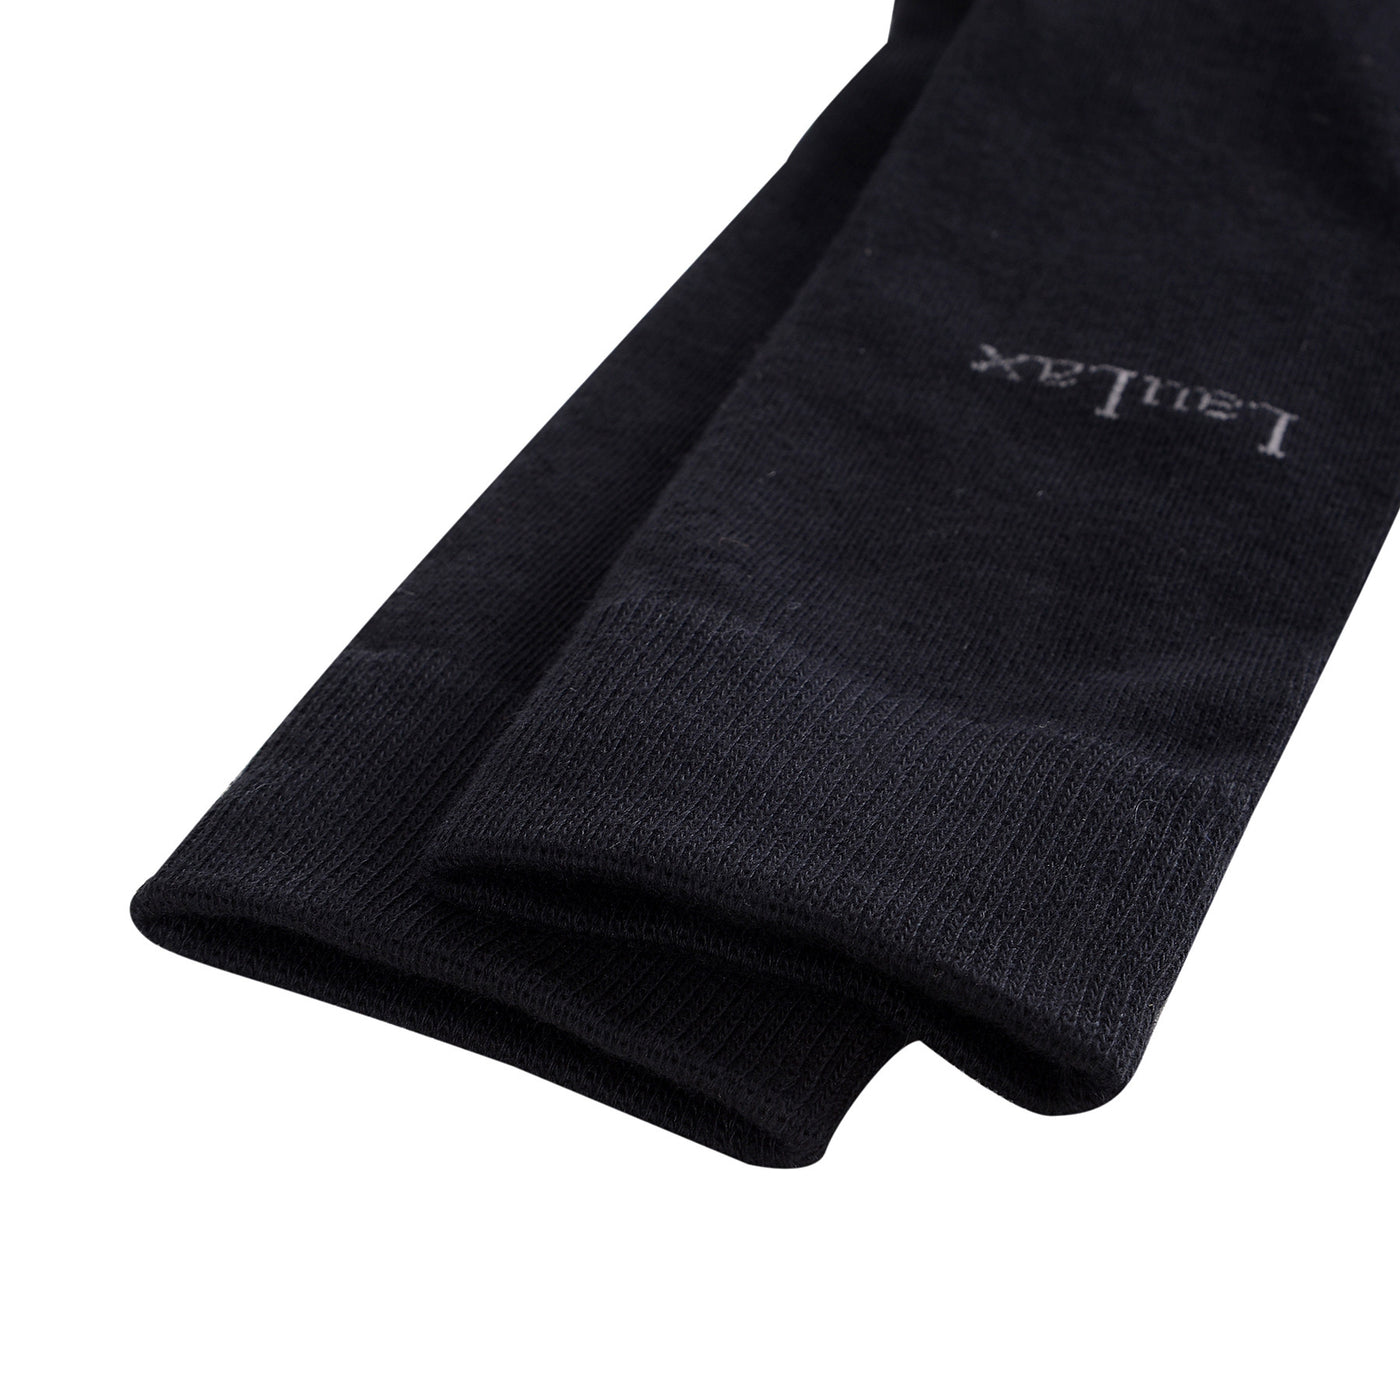 4 pares de calcetines de vestir de algodón peinado de alta calidad, negro, set de regalo, bolsa de lavado de calcetines Wish 